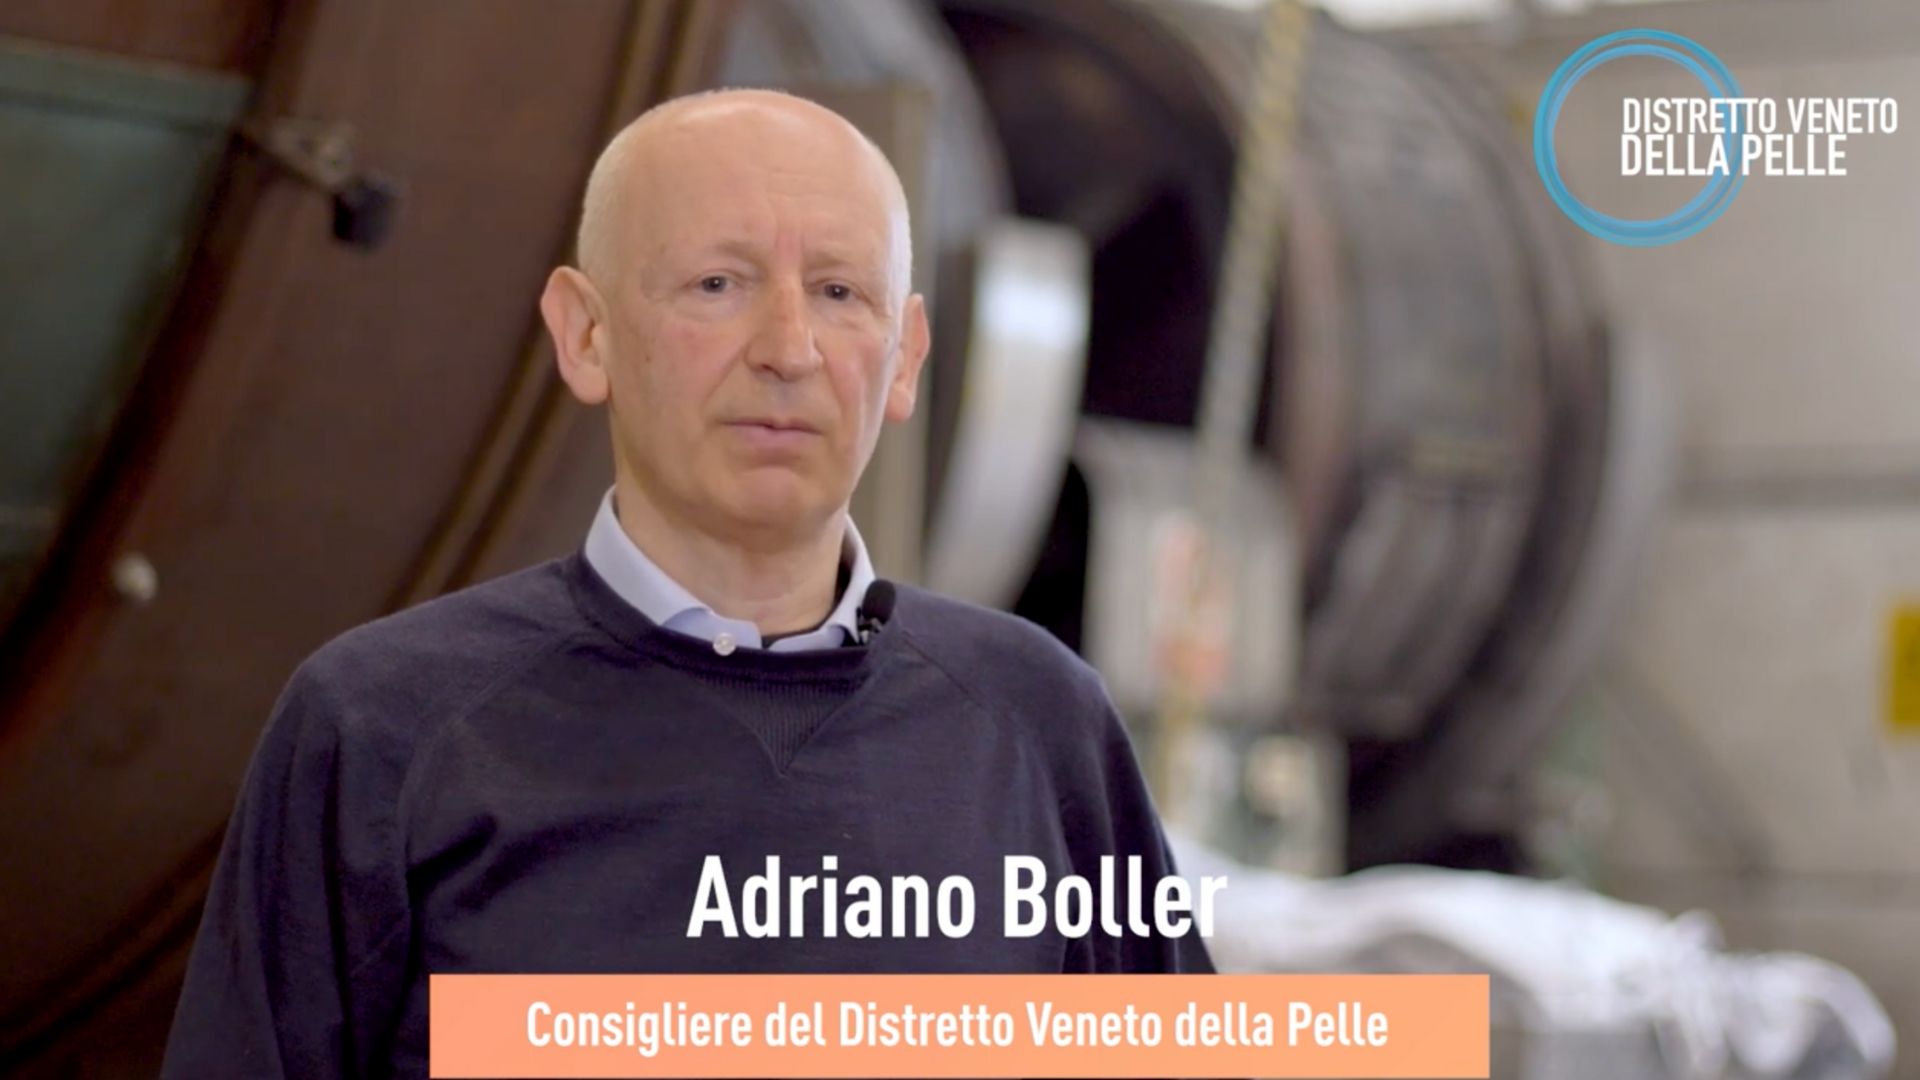 Conosciamo il consigliere Adriano Boller, rappresentante di Confartigianato Imprese Vicenza al tavolo di Direttivo del Distretto Veneto della Pelle.